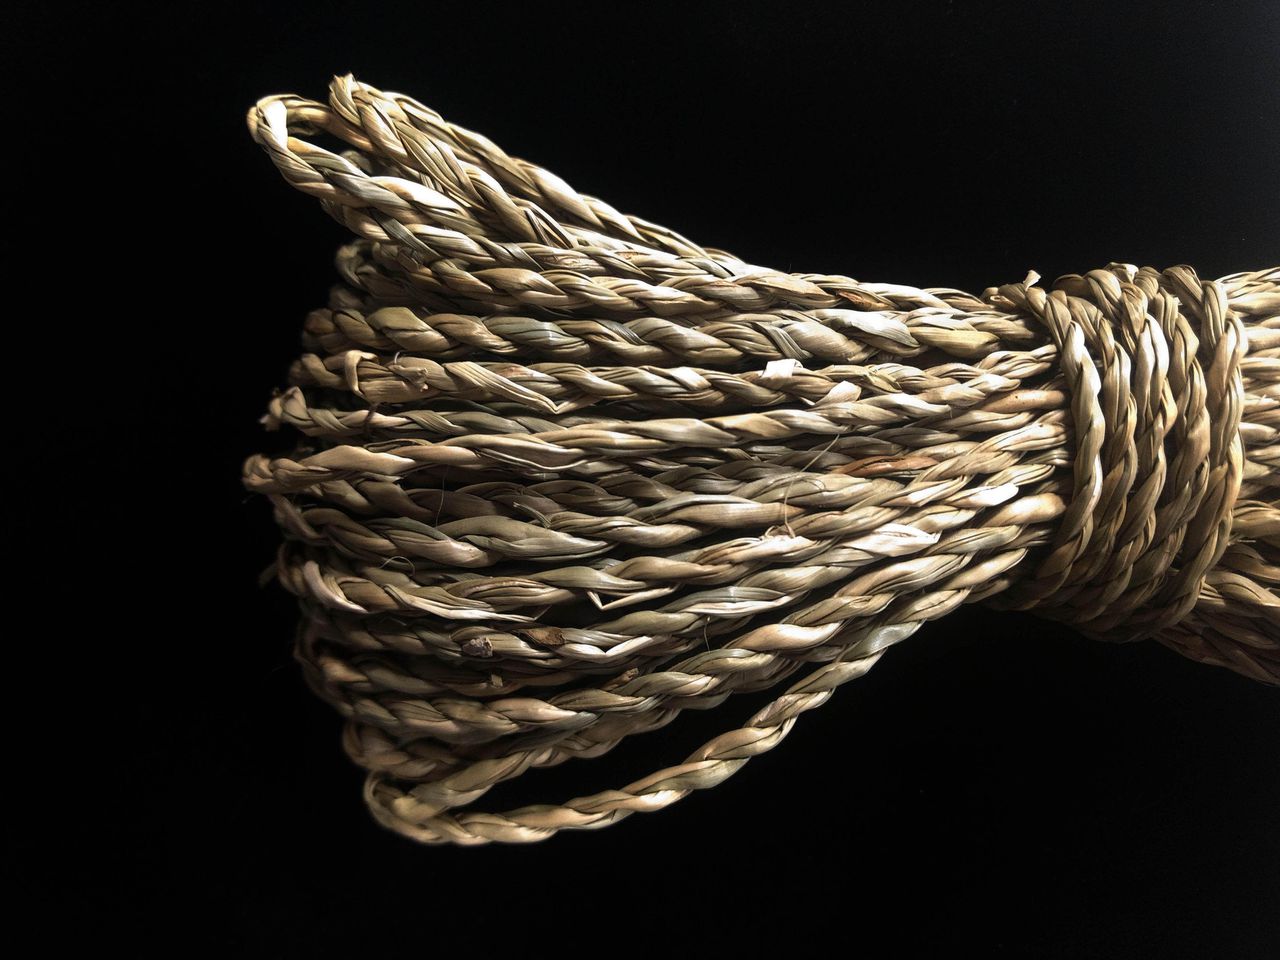 Modern touw gemaakt van gedraaide grasvezel. Het prehistorische neanderthaltouw van gedraaide bastvezels was waarschijnlijk ook geschikt voor touw, netten, kleden, tassen en misschien zelfs kleding